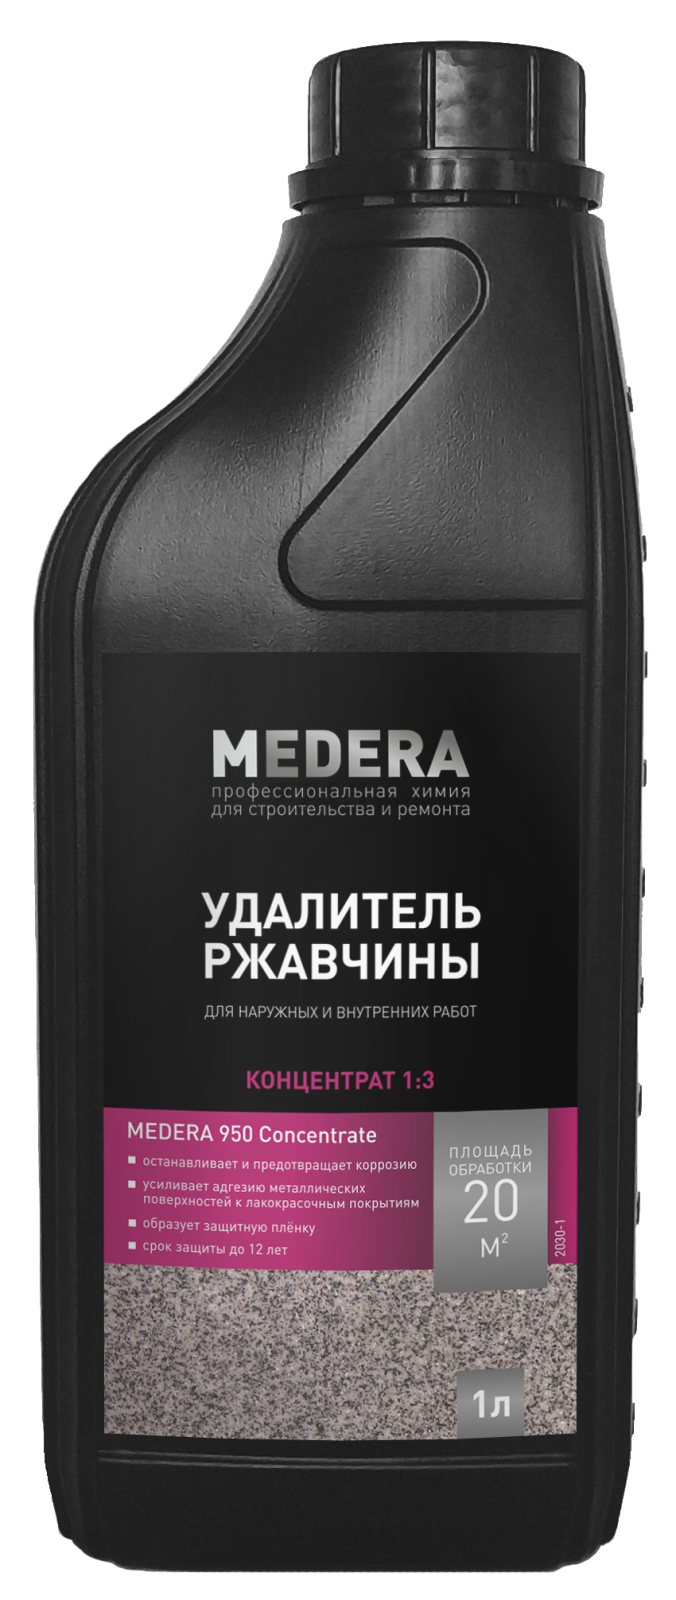 Удалитель ржавчины MEDERA 950 концентрат 1/3 1 л (2030-1)